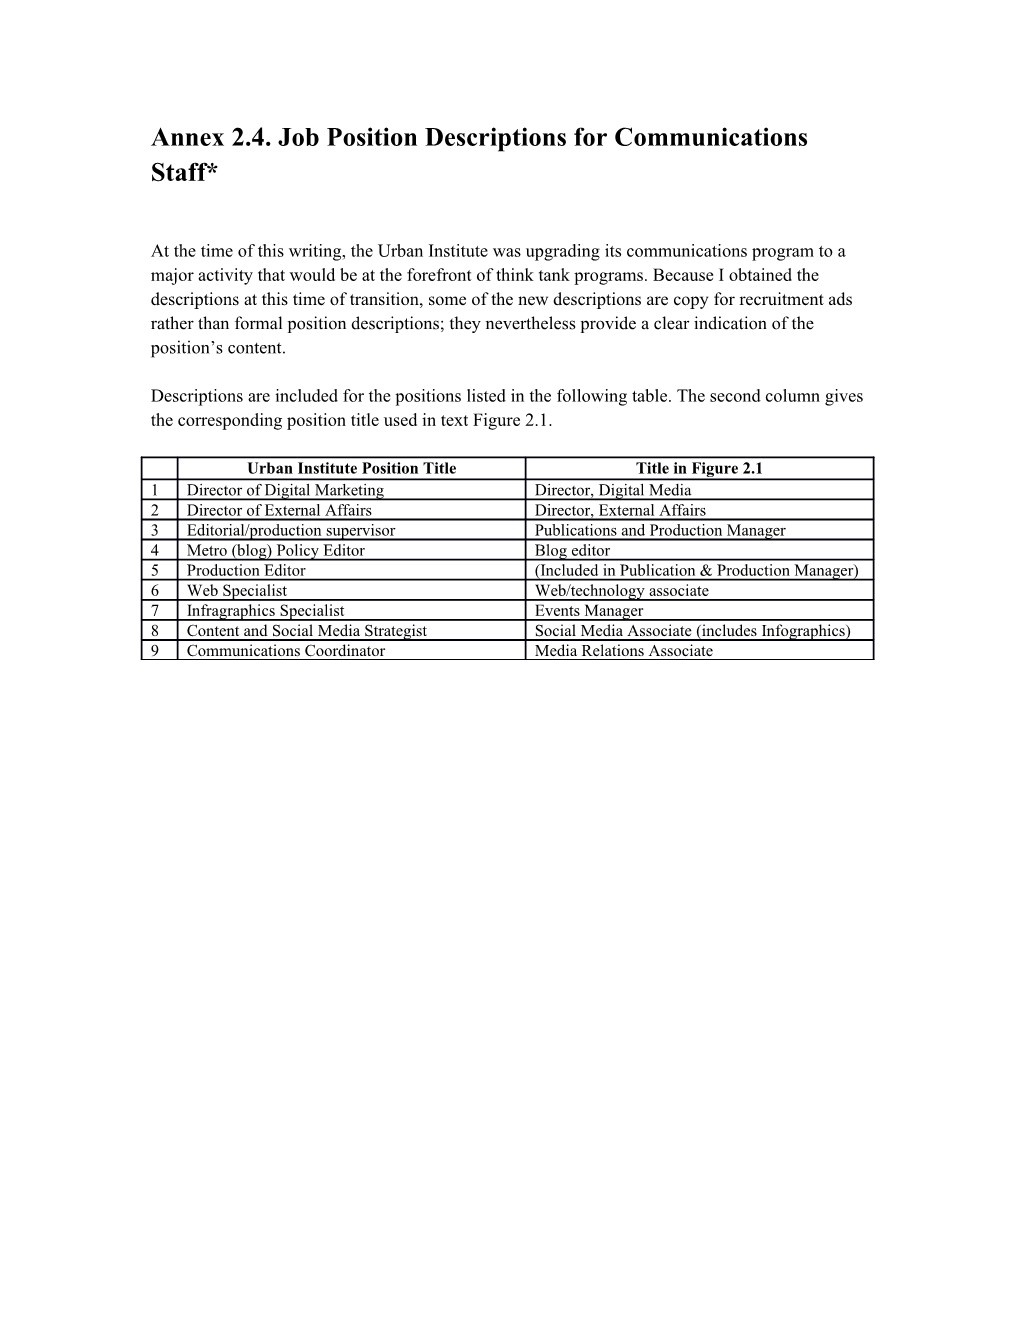 Annex 2.4.Job Position Descriptions for Communications Staff*